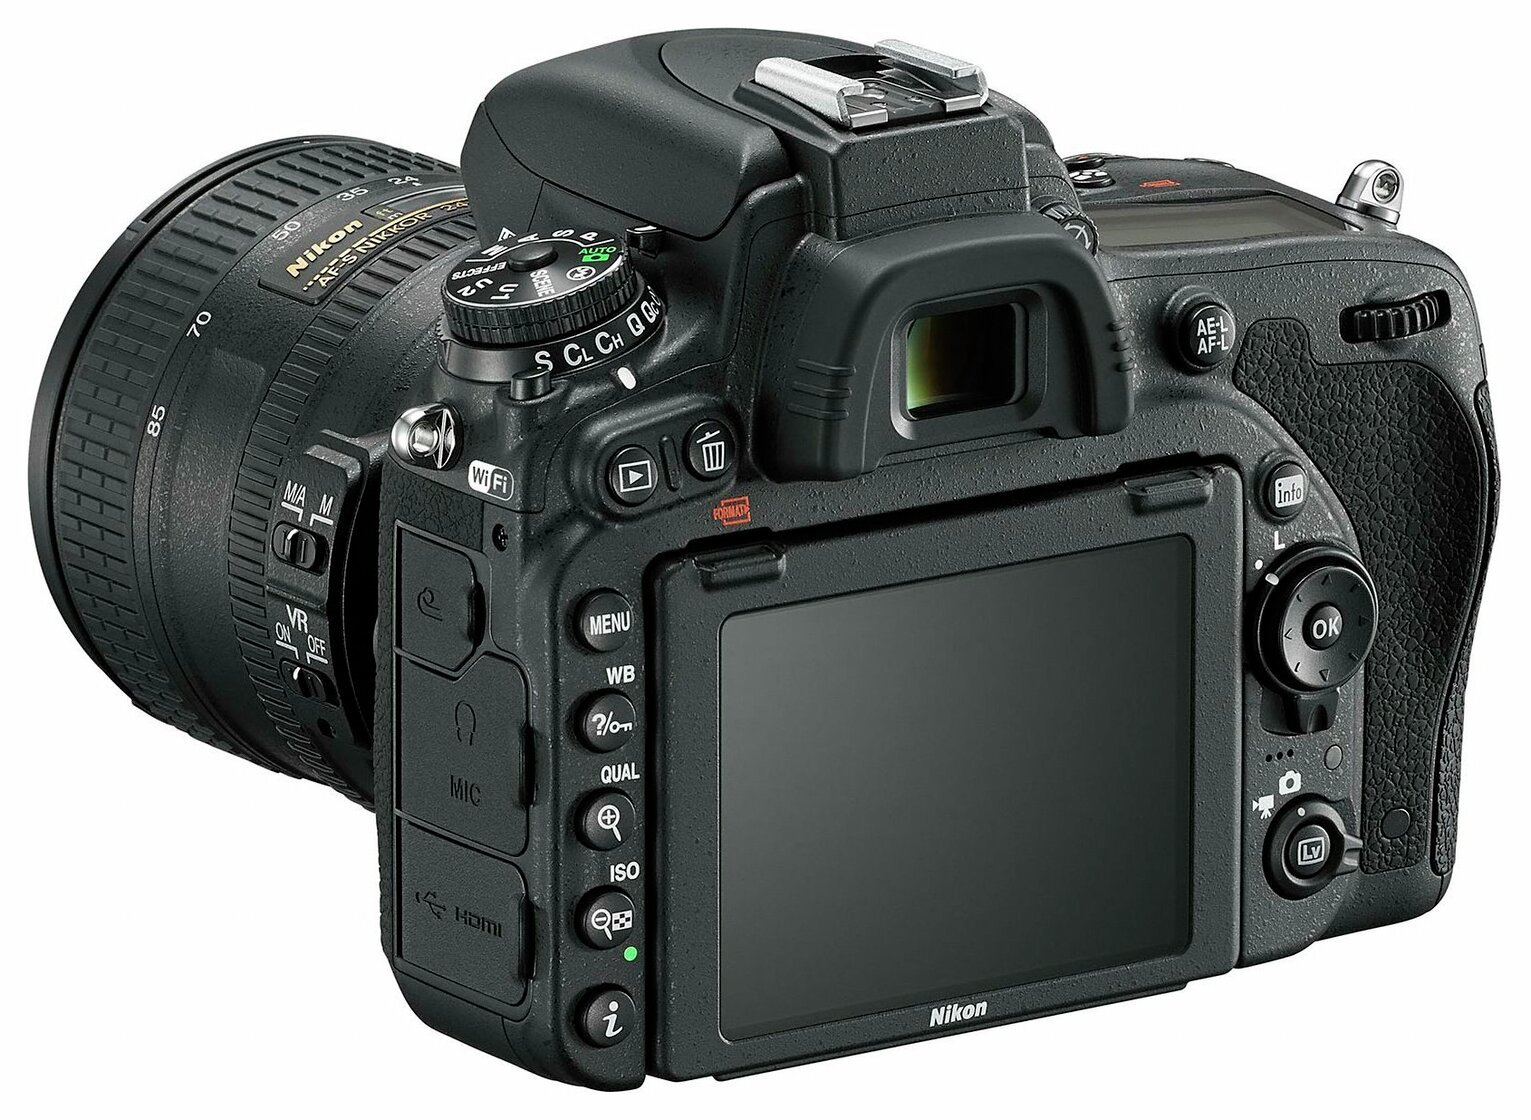 Nikon D750 DSLR Camera with AF-S 24-85mm Lens Review